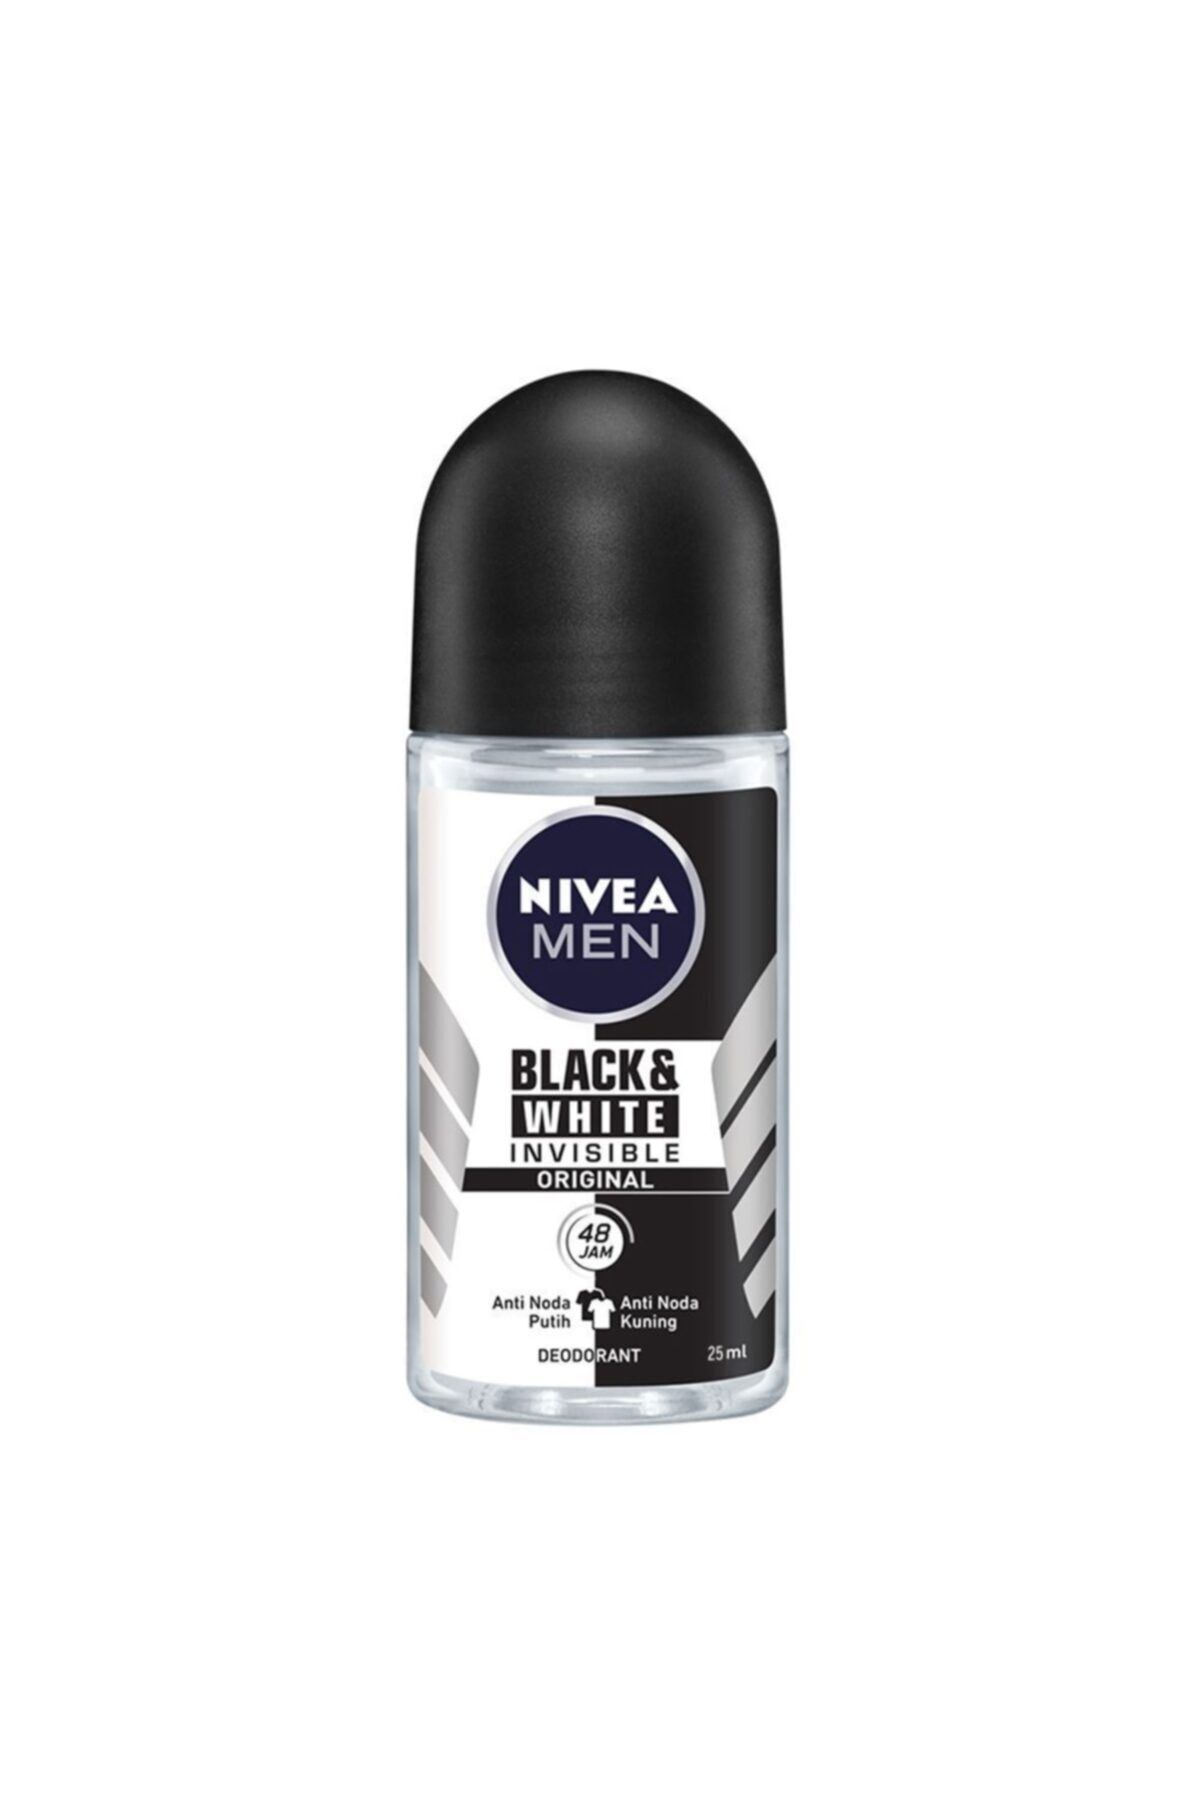 NIVEA Men 48h Black & White Invisible Original Deodorant Roll On, 25ml